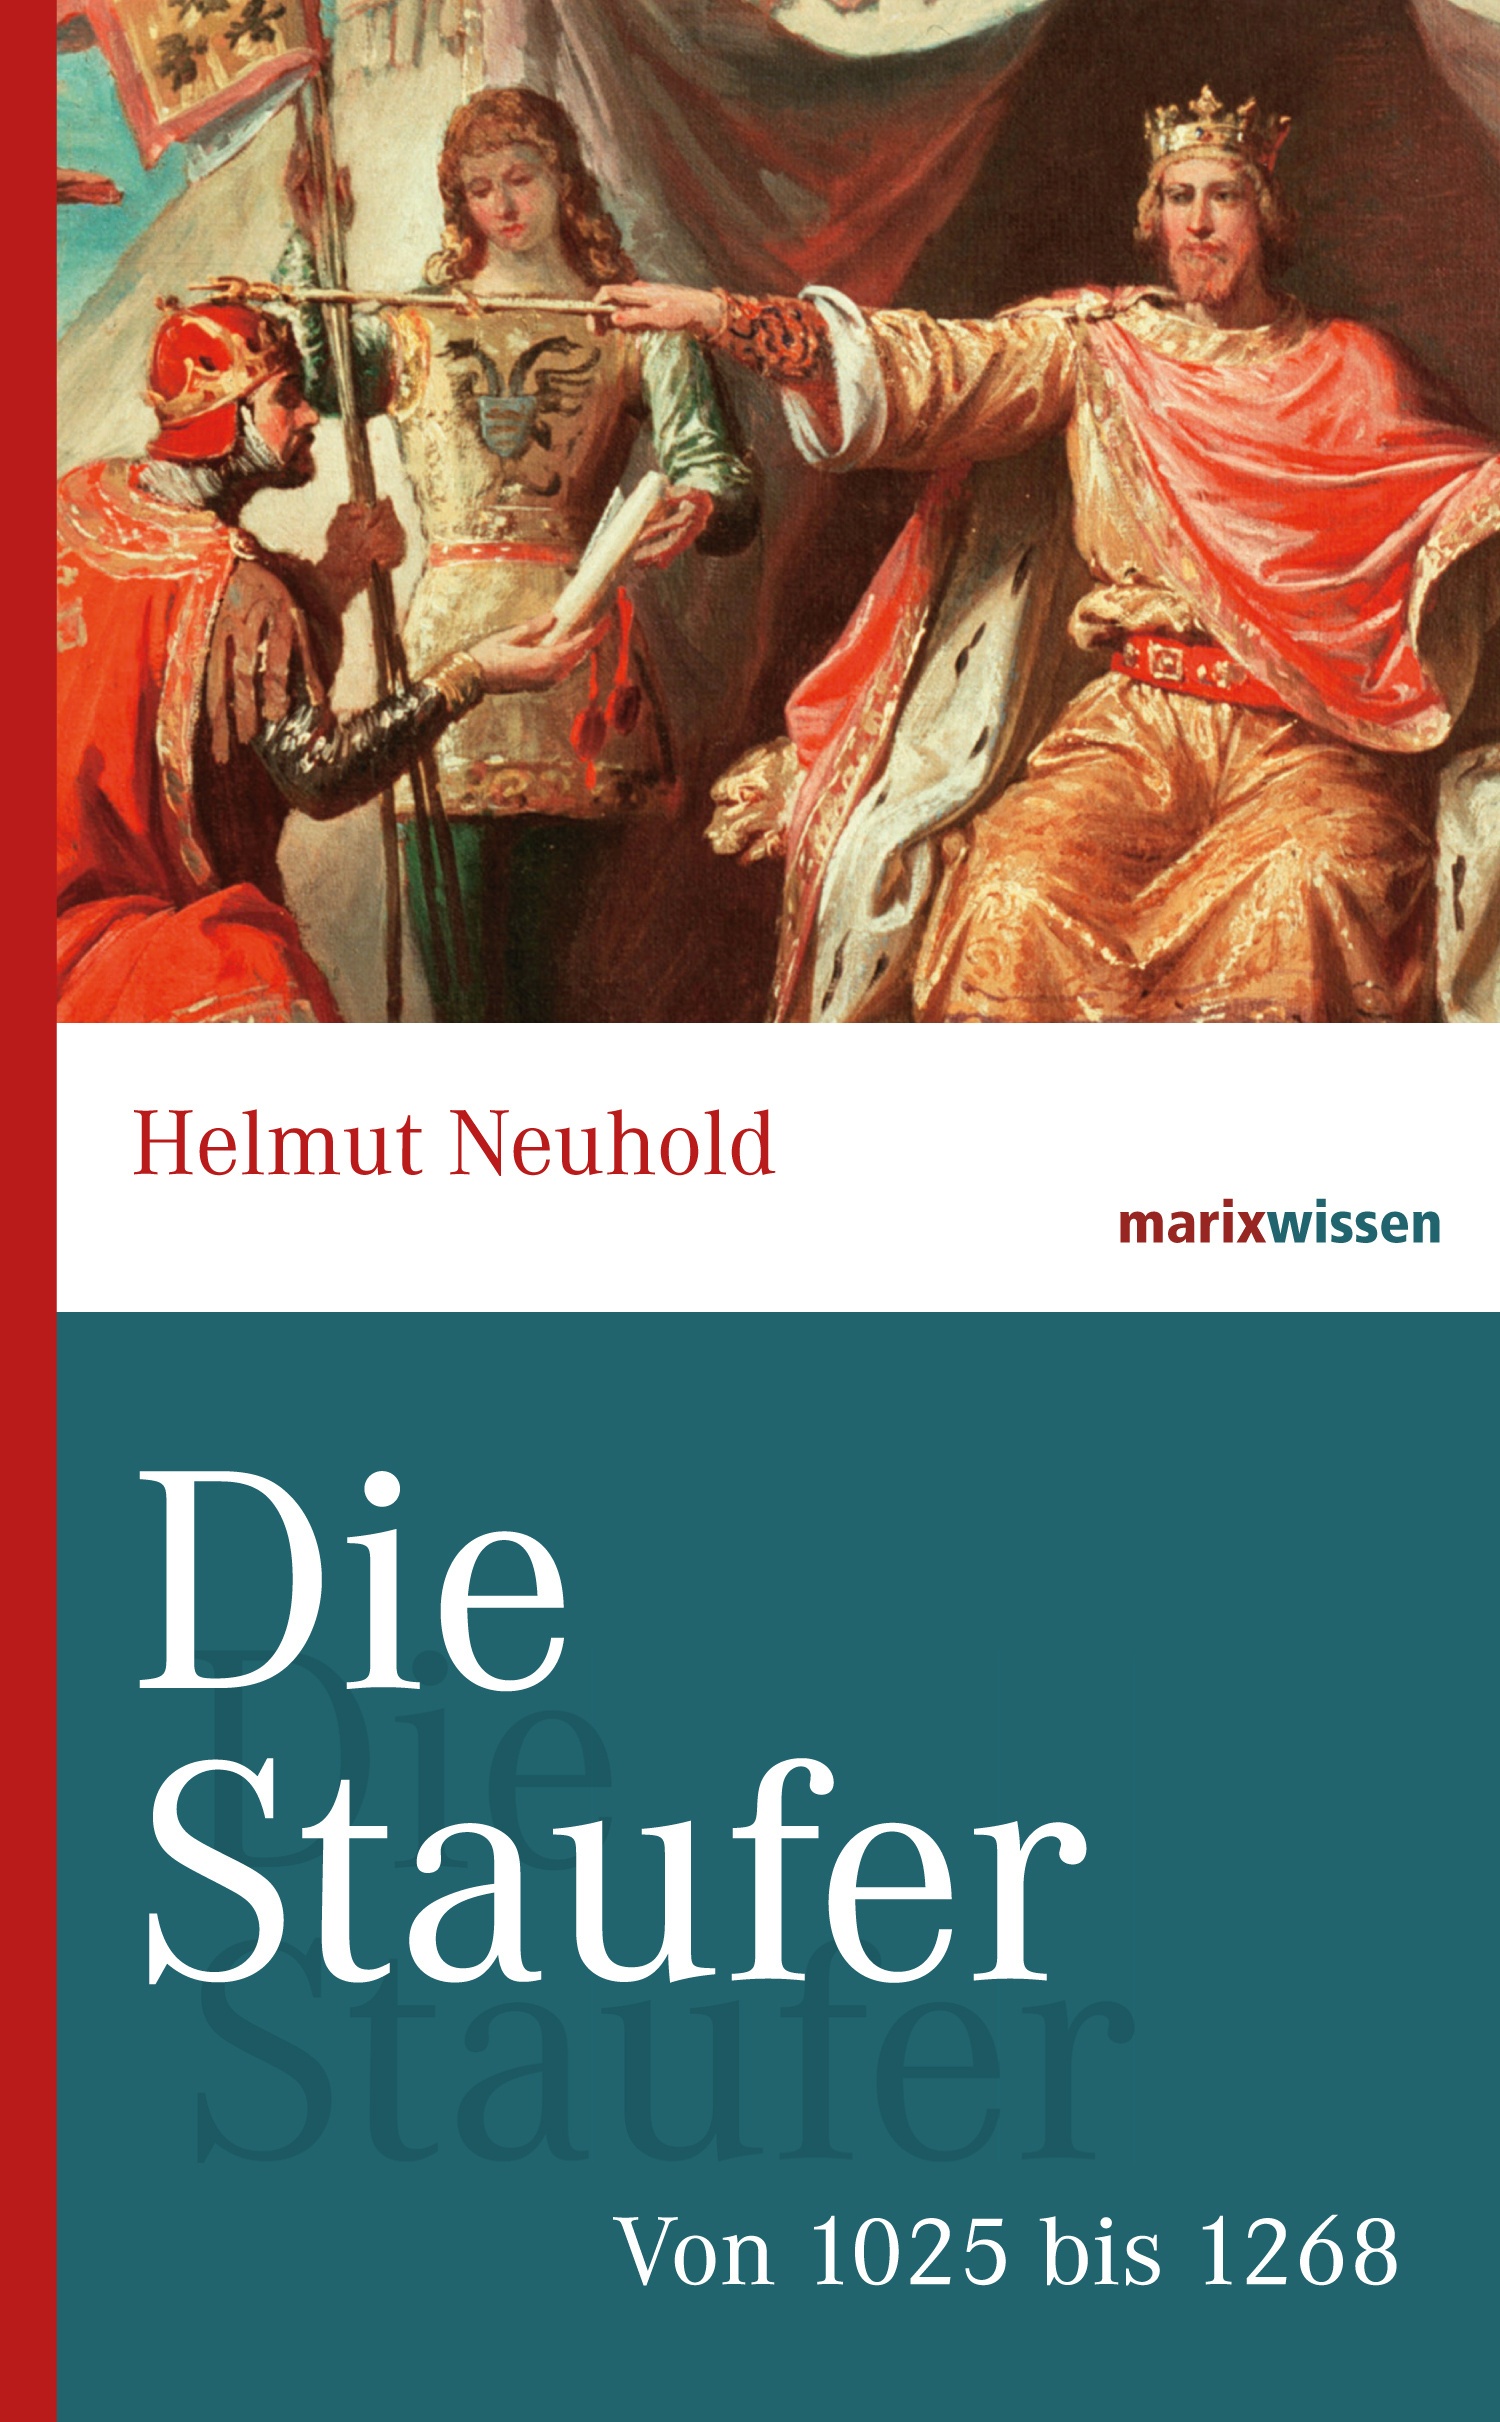 Marixwissen / Die Staufer - Helmut Neuhold  Gebunden